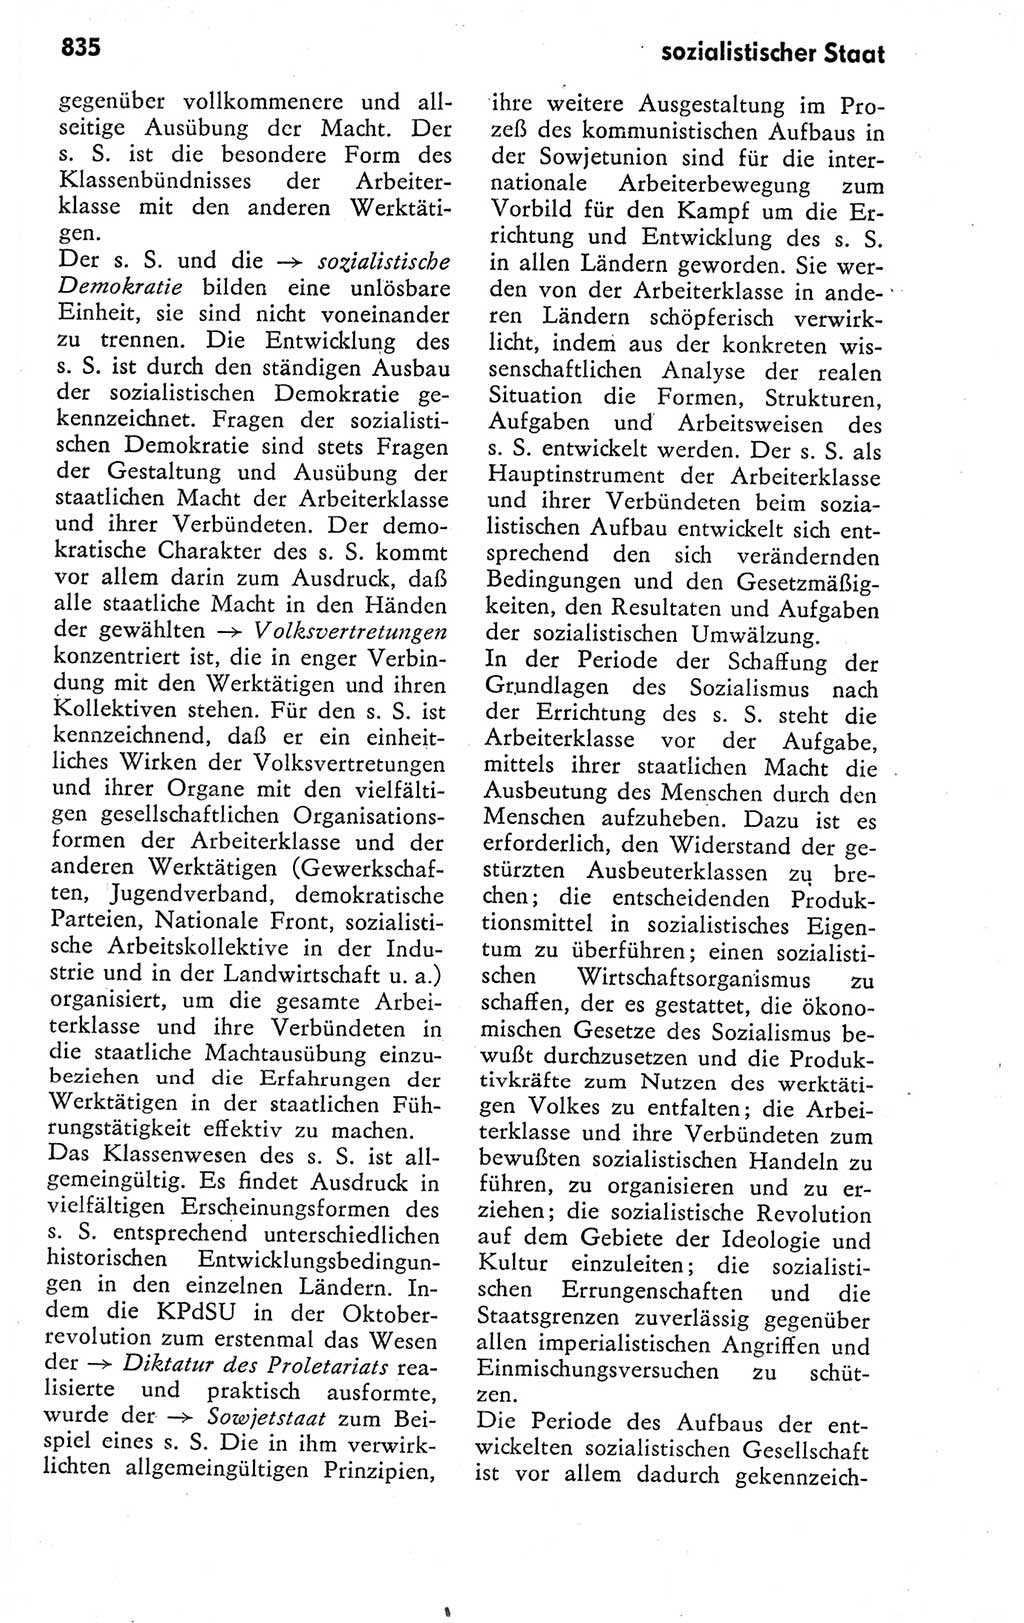 Kleines politisches Wörterbuch [Deutsche Demokratische Republik (DDR)] 1978, Seite 835 (Kl. pol. Wb. DDR 1978, S. 835)